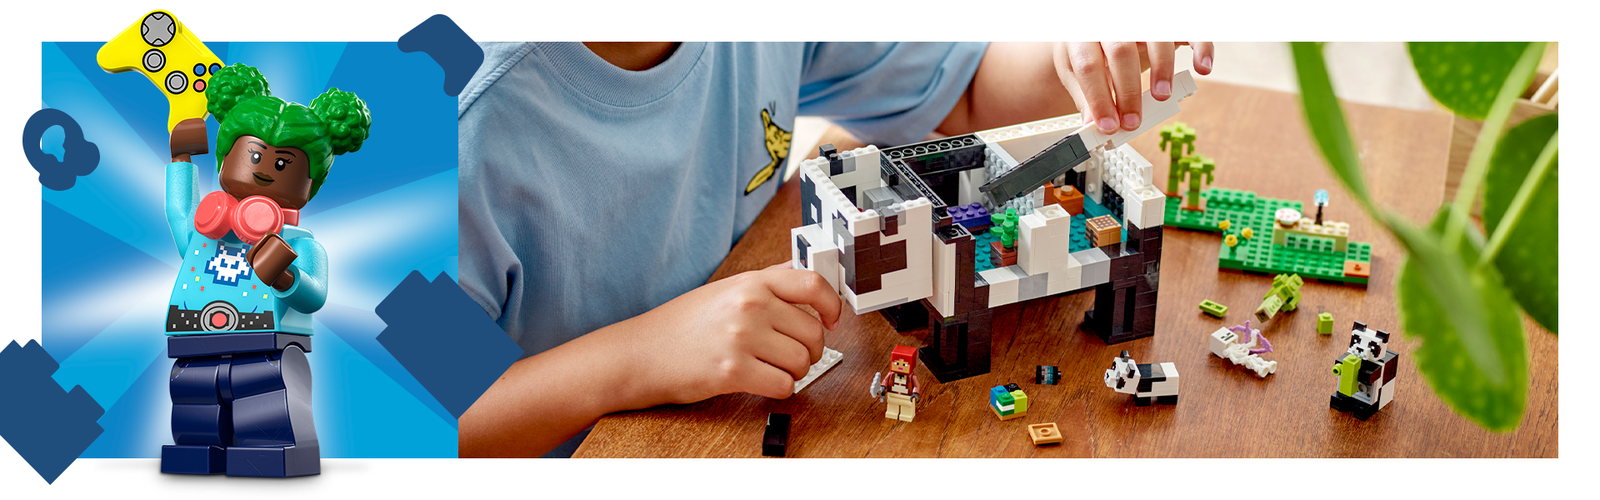  LEGO Brickheadz Steve & Creeper : Toys & Games